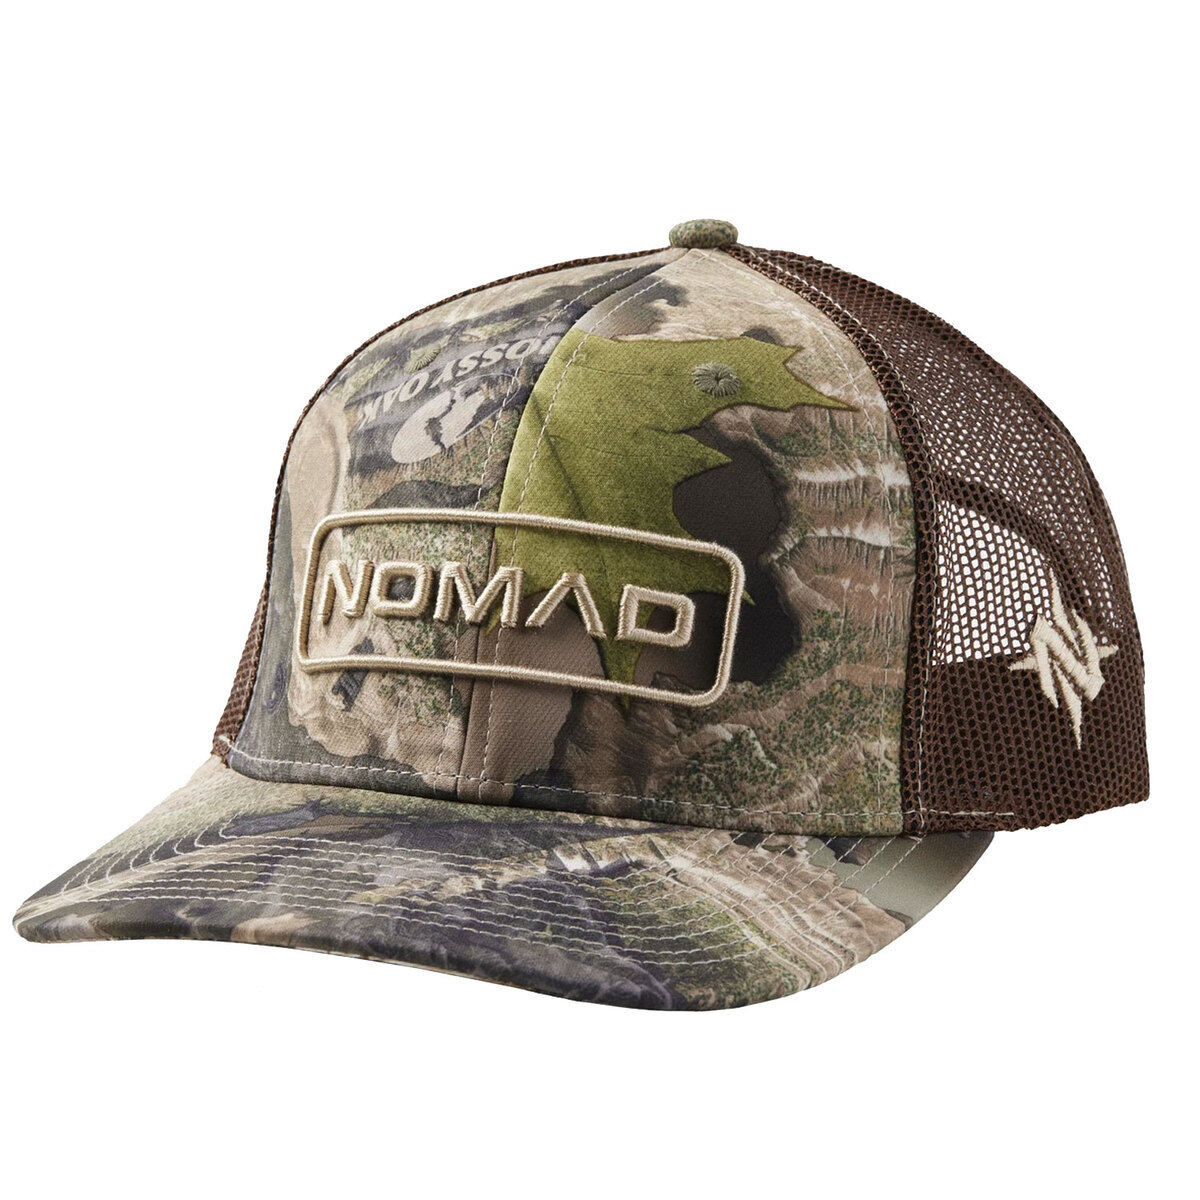 https://www.sportsmans.com/medias/nomad-droptine-camo-hunter-trucker-hat-1684520-1.jpg?context=bWFzdGVyfGltYWdlc3wyNTIwMzF8aW1hZ2UvanBlZ3xhRGt3TDJnek5DOHhNREU0TURnMk9EZzJOakEzT0M4eE5qZzBOVEl3TFRGZlltRnpaUzFqYjI1MlpYSnphVzl1Um05eWJXRjBYekV5TURBdFkyOXVkbVZ5YzJsdmJrWnZjbTFoZEF8ZTE3M2U2ZTkyYTczNWI2NGRkZTNmZWM0ODI5MjM1ZjYxMzg1NmMzYjY2MjJkYTkyZjFmMTE3NmU1Njc1ZGEwYw